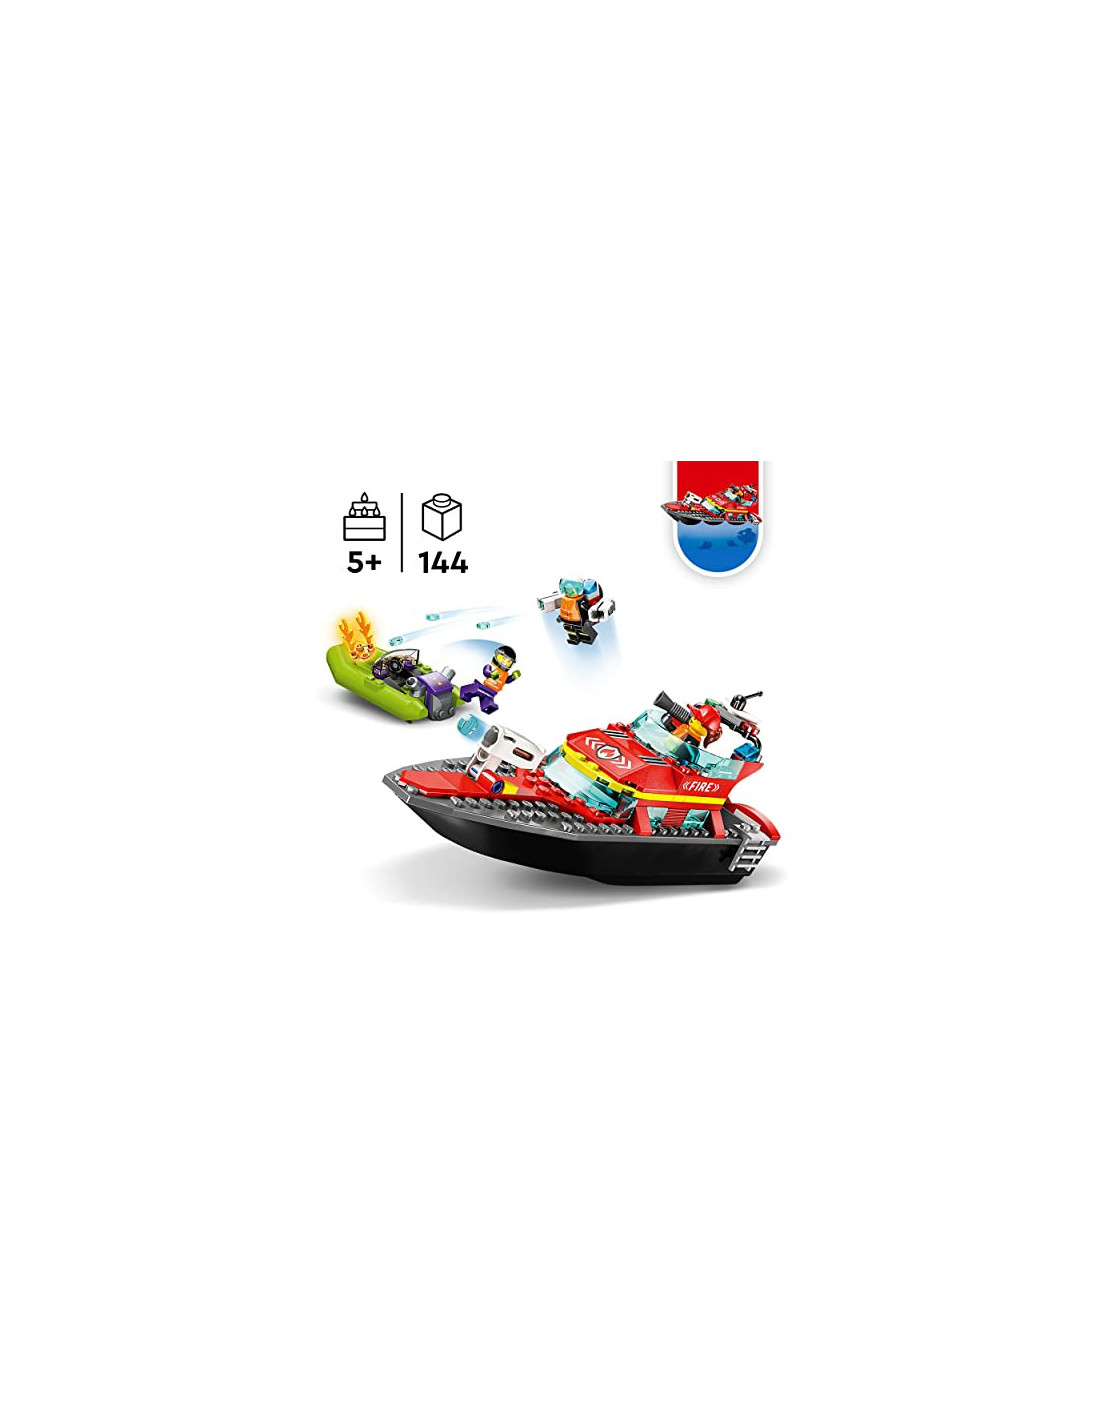 60373 - LEGO® City - Le Bateau de Sauvetage des Pompiers LEGO